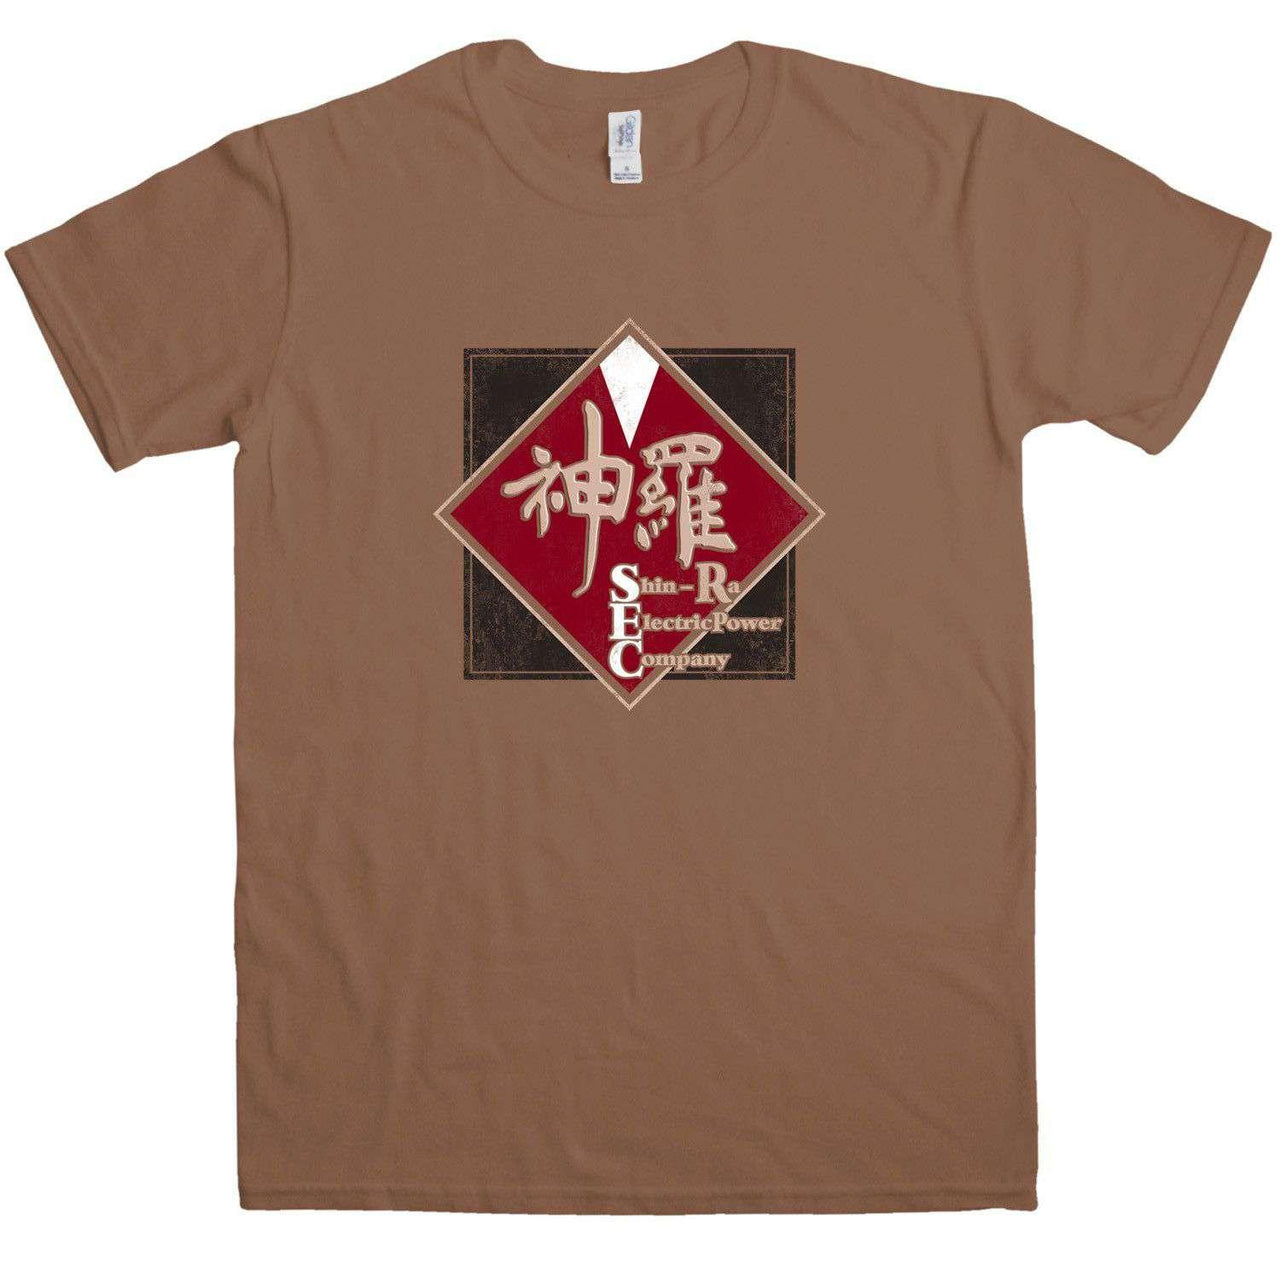 Shin-Ra Electric Graphic T-Shirt For Men 8Ball